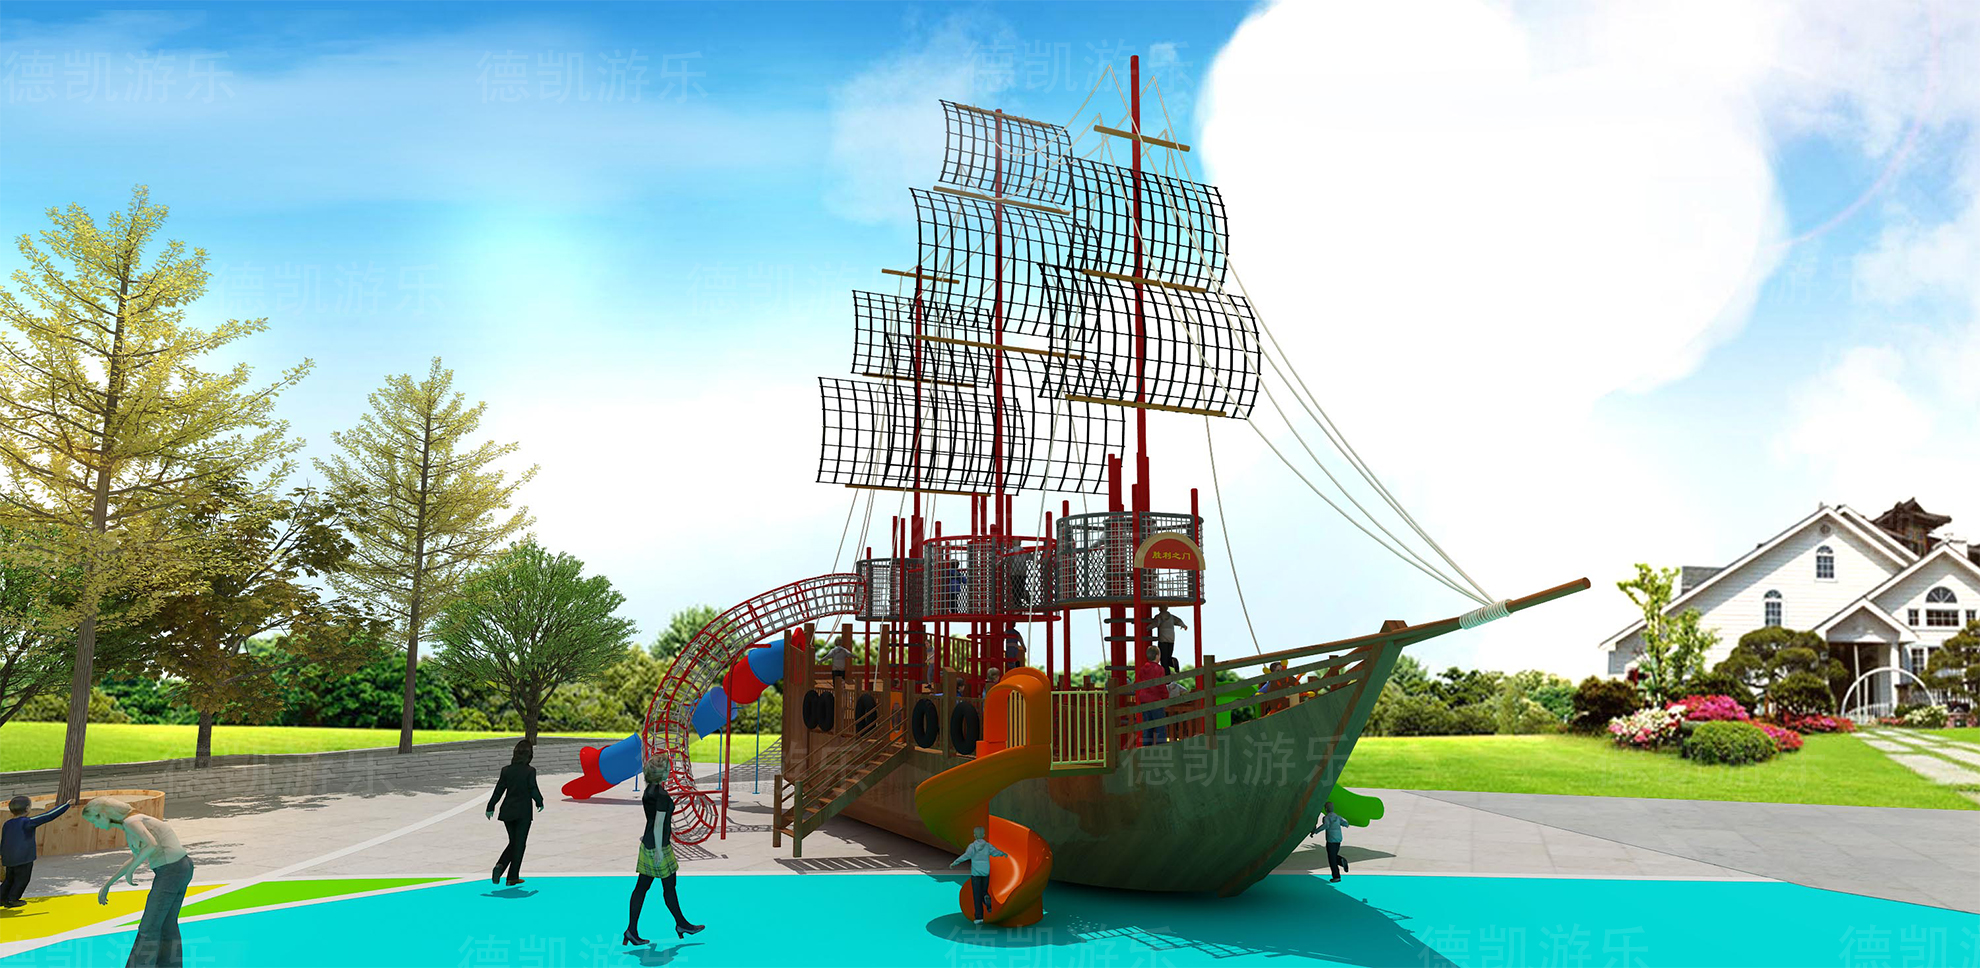 海盗船-主题造型系列-德凯游乐设备-四川游乐场设备设施公司-儿童游乐设备-户外游乐场设施-成都儿童乐园设计厂家